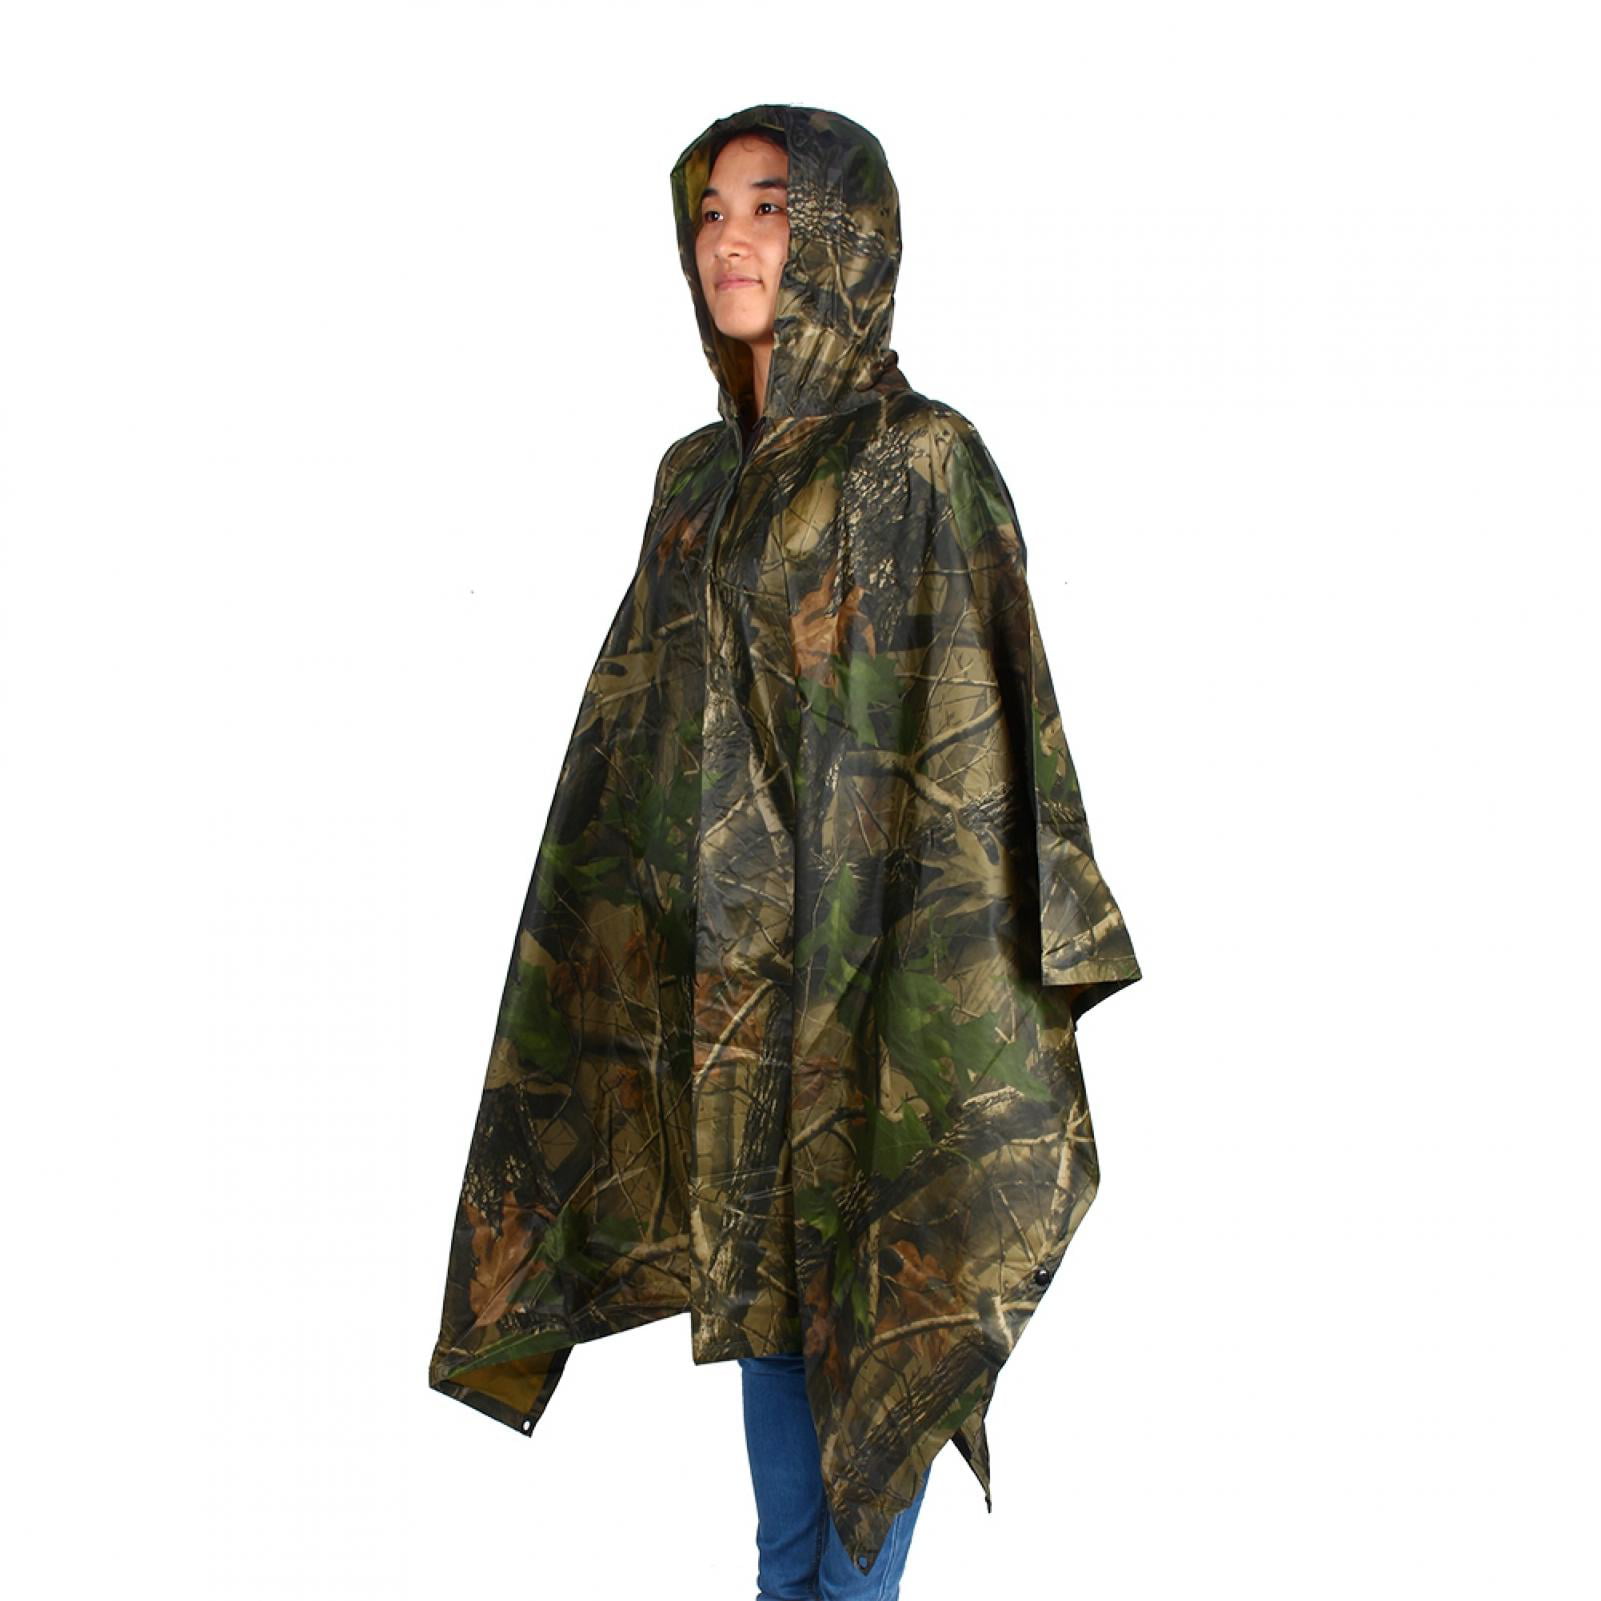 WOODLAND Nylon Military USMC Style All Weather Poncho Rain Coat Camping Hiking 